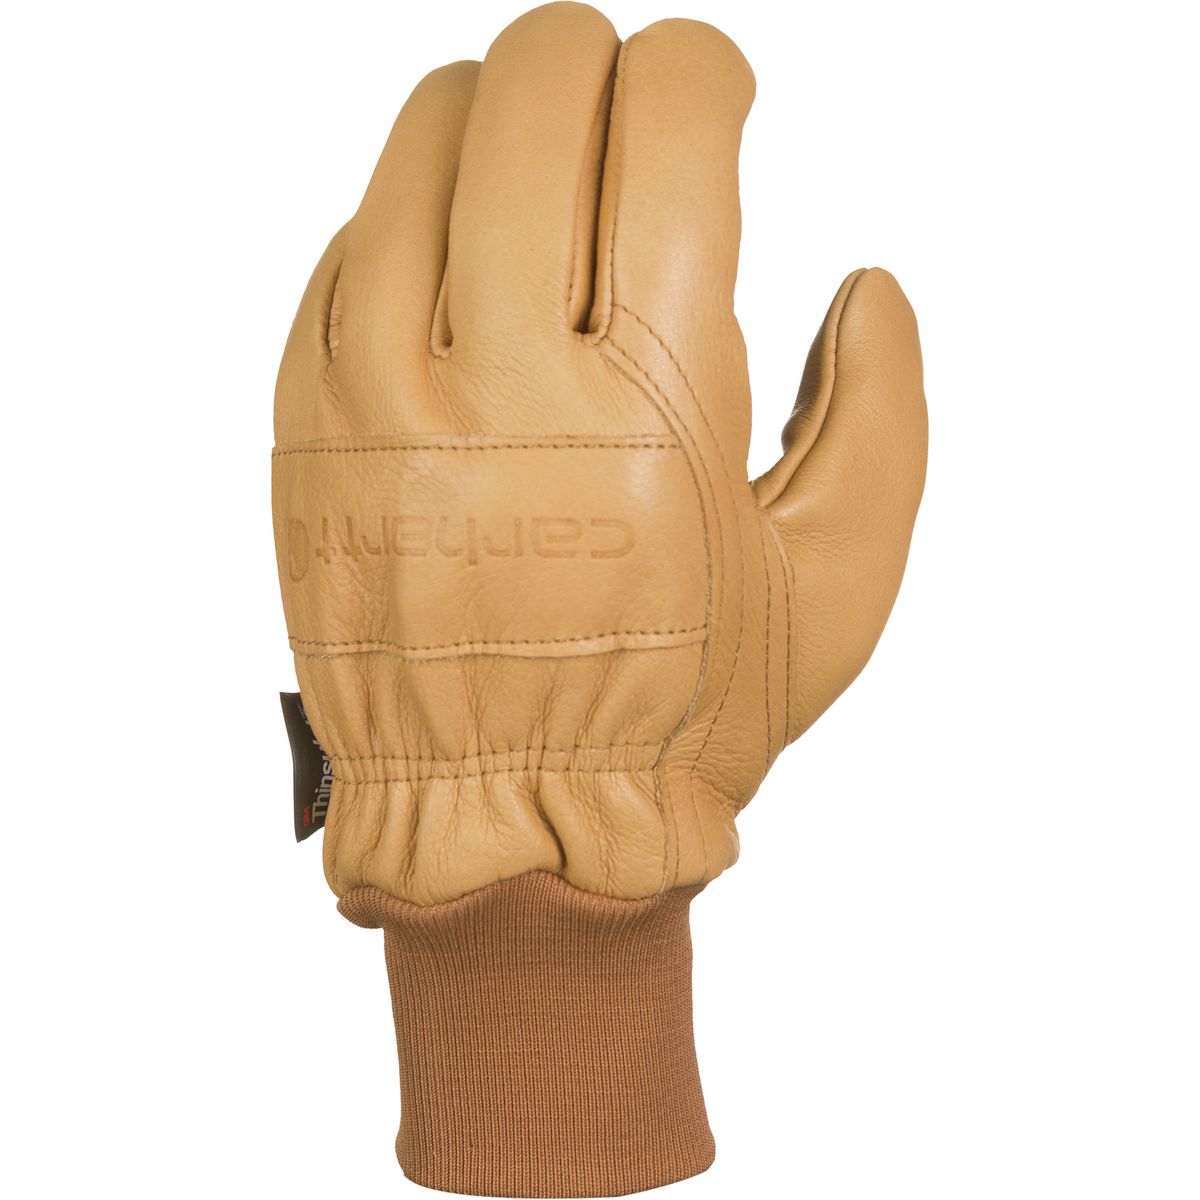 Carhartt Gloves Insulated Leather Gunn Cut Glove Brown, XL